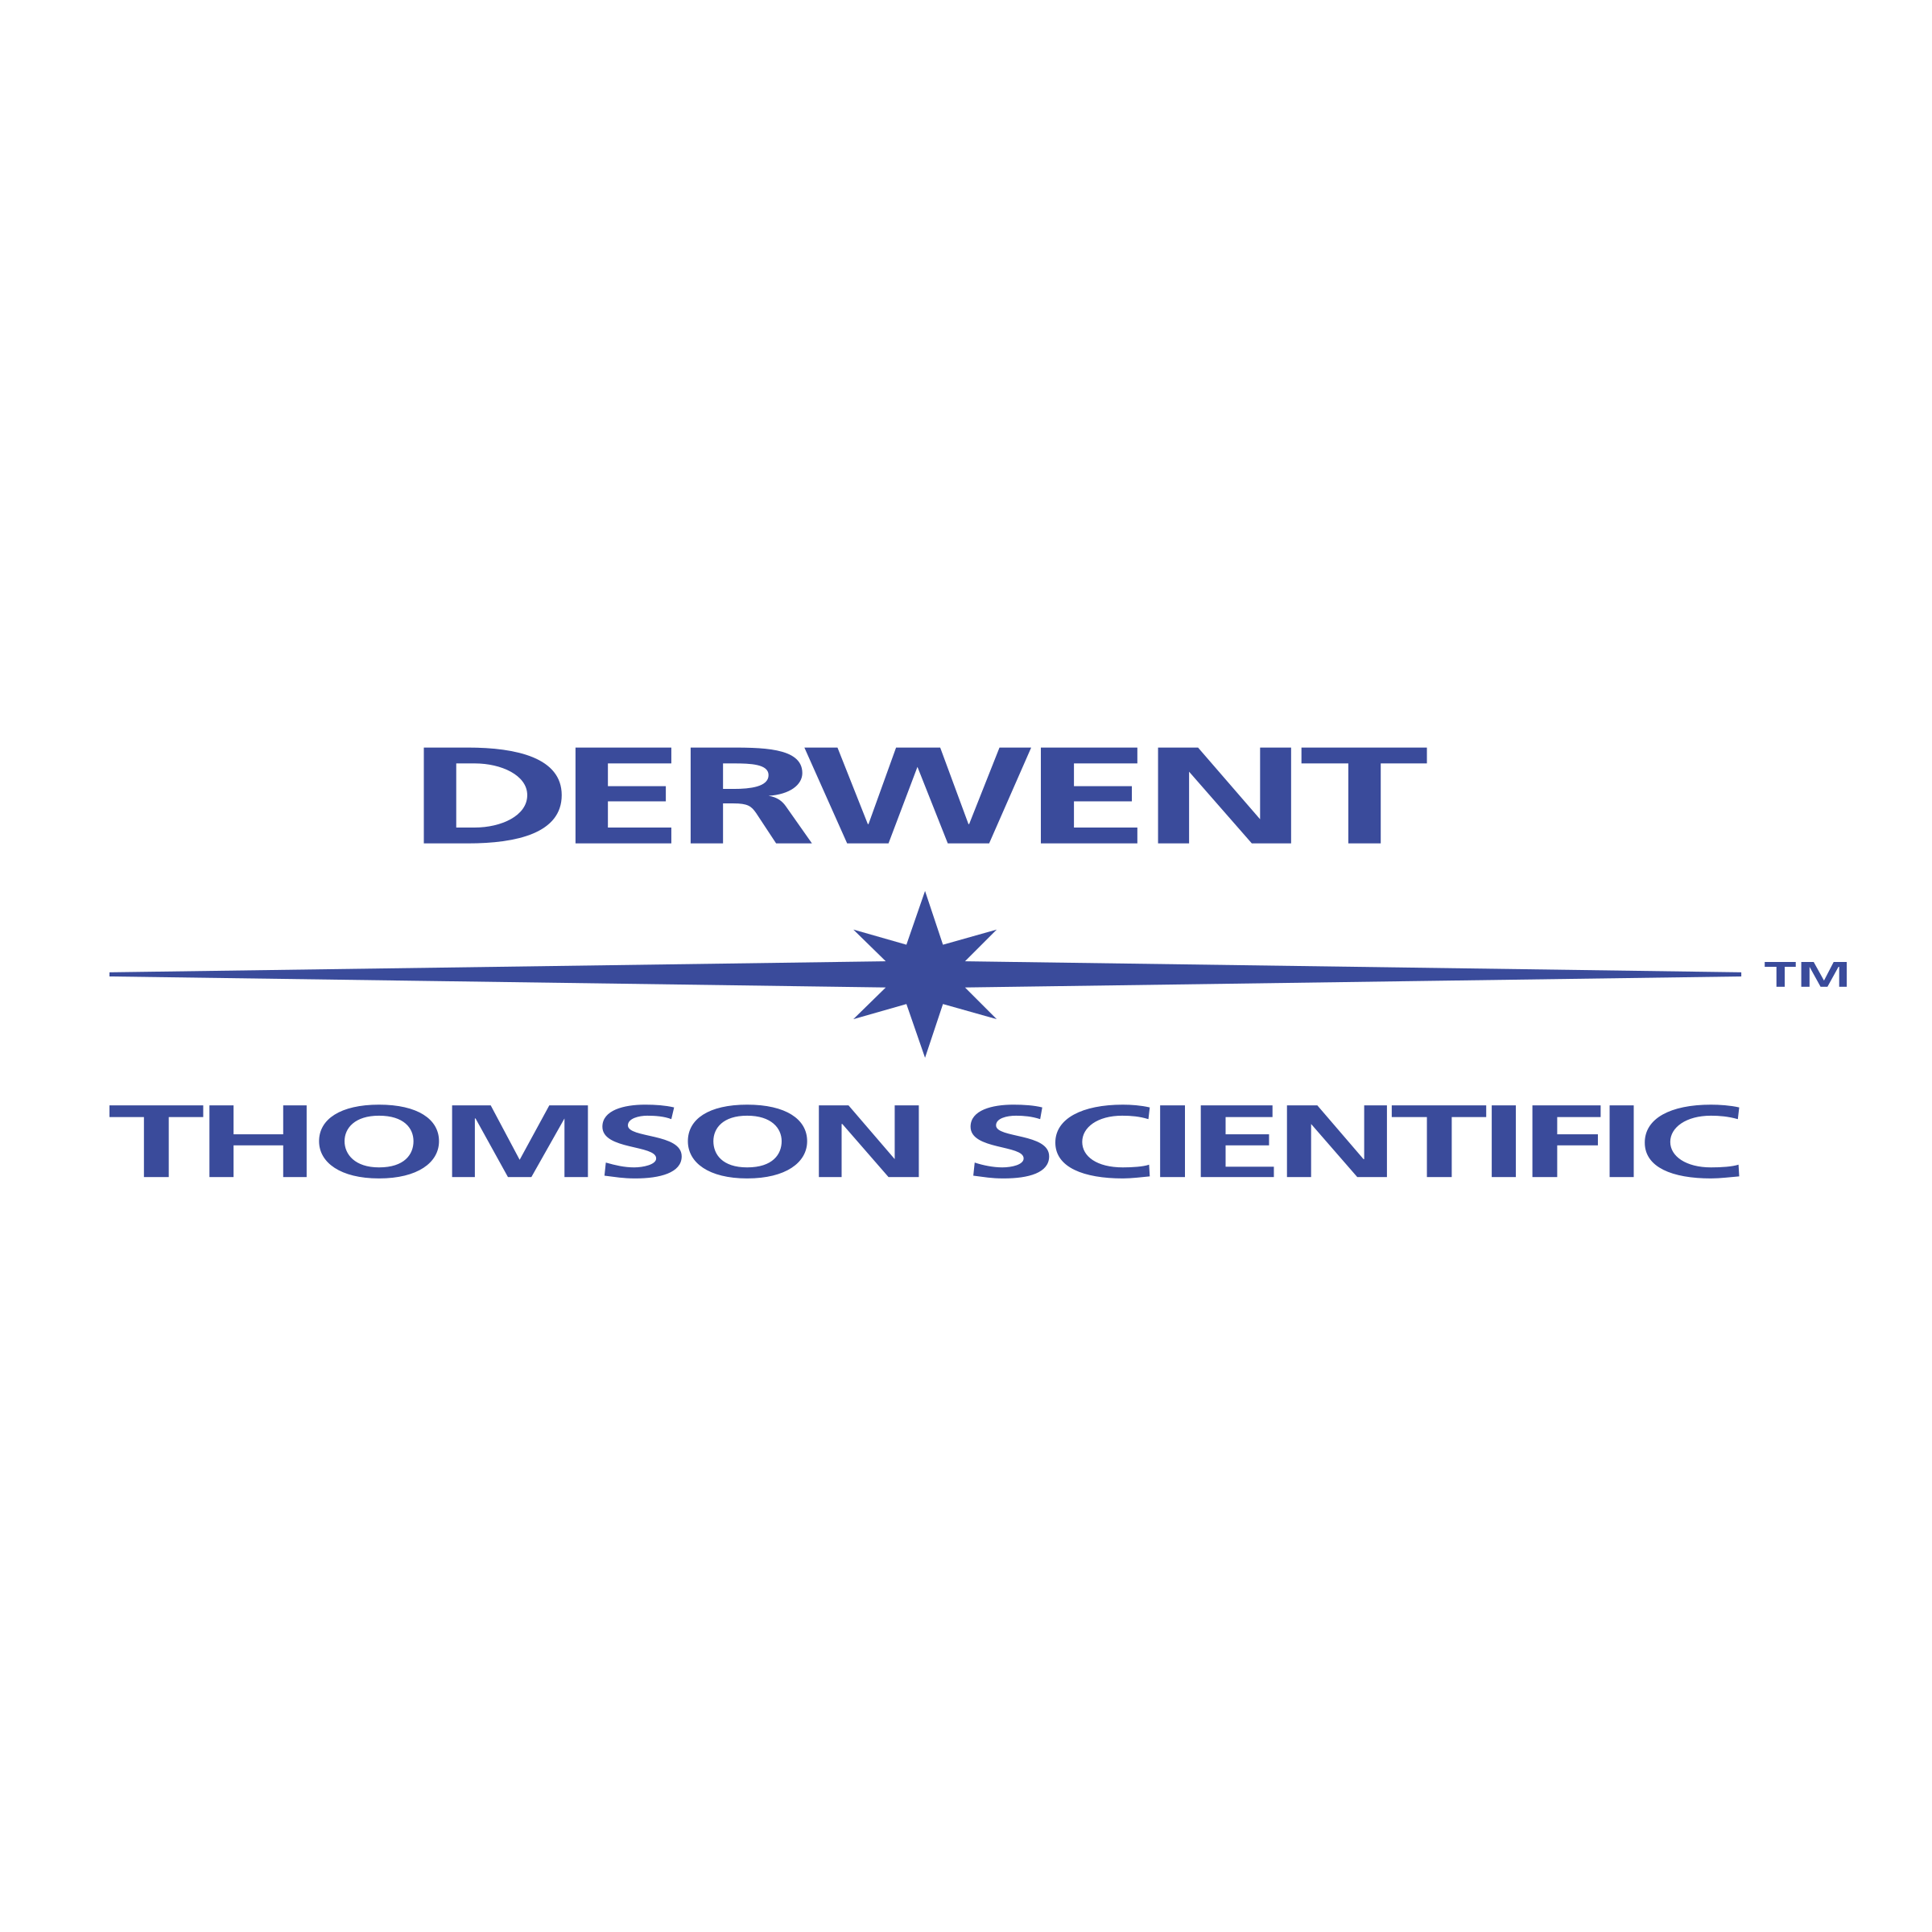 Derwent Logo - Derwent Logo PNG Transparent & SVG Vector - Freebie Supply